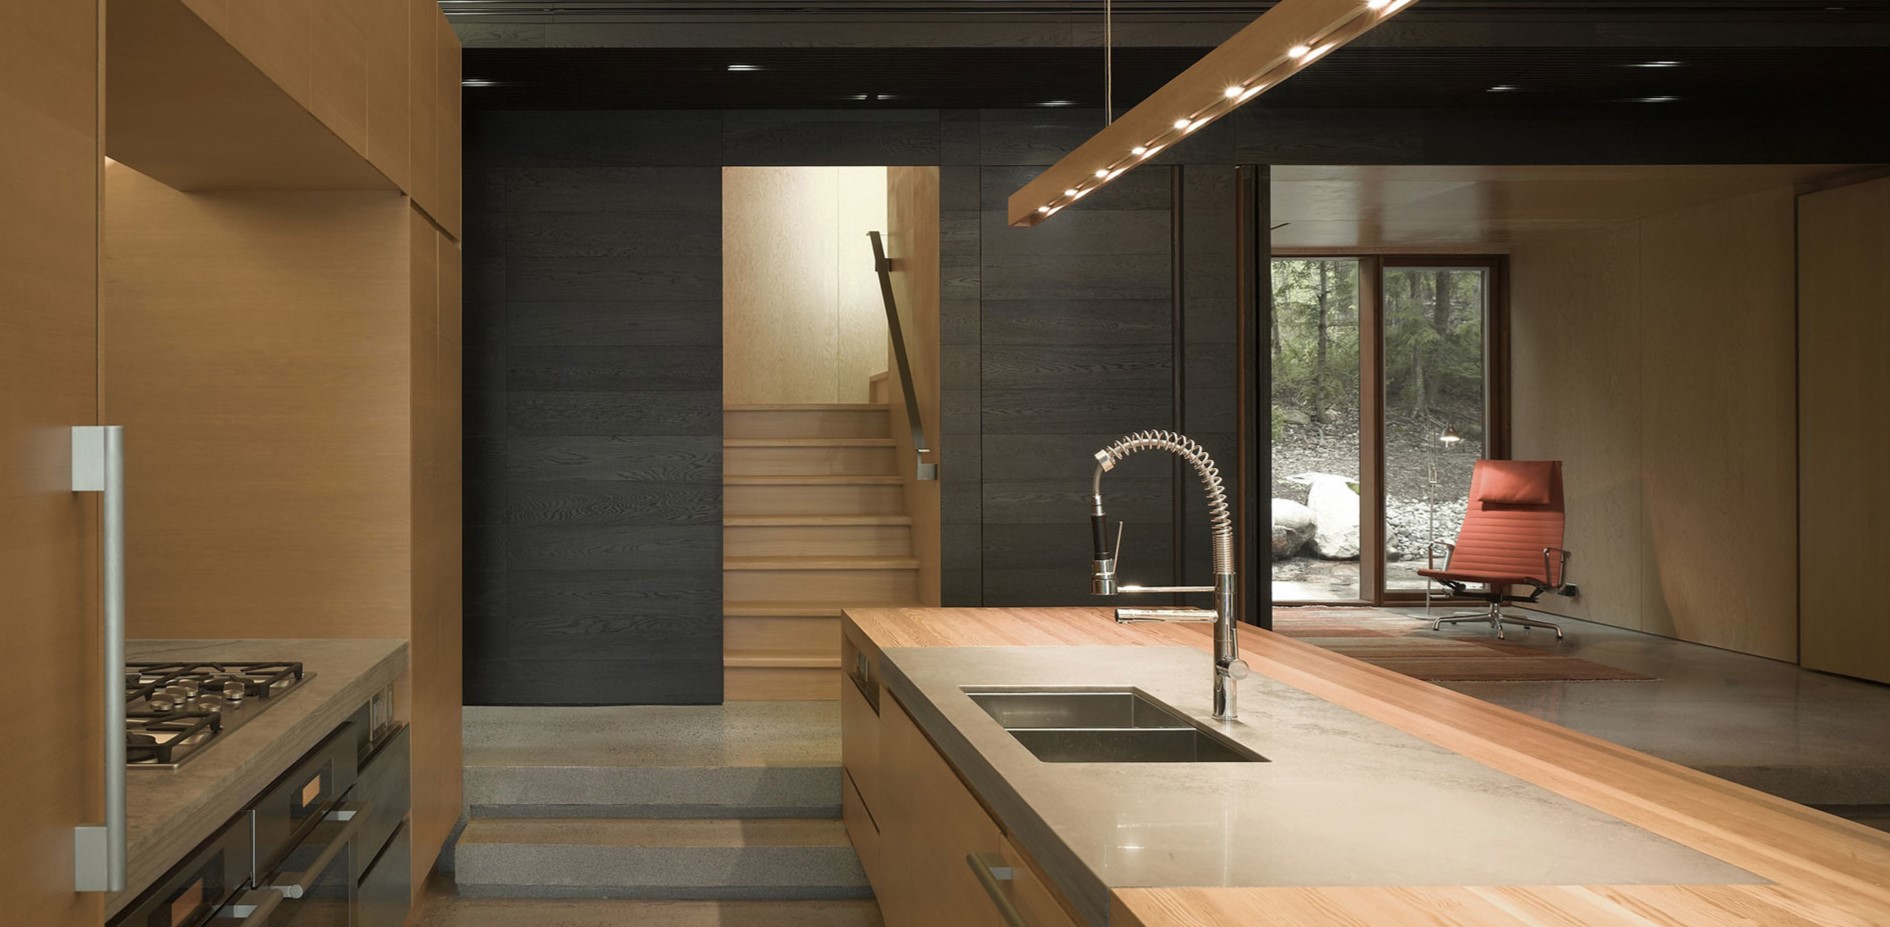 Современный интерьер кухни, оформленный с элементами стиля лофт